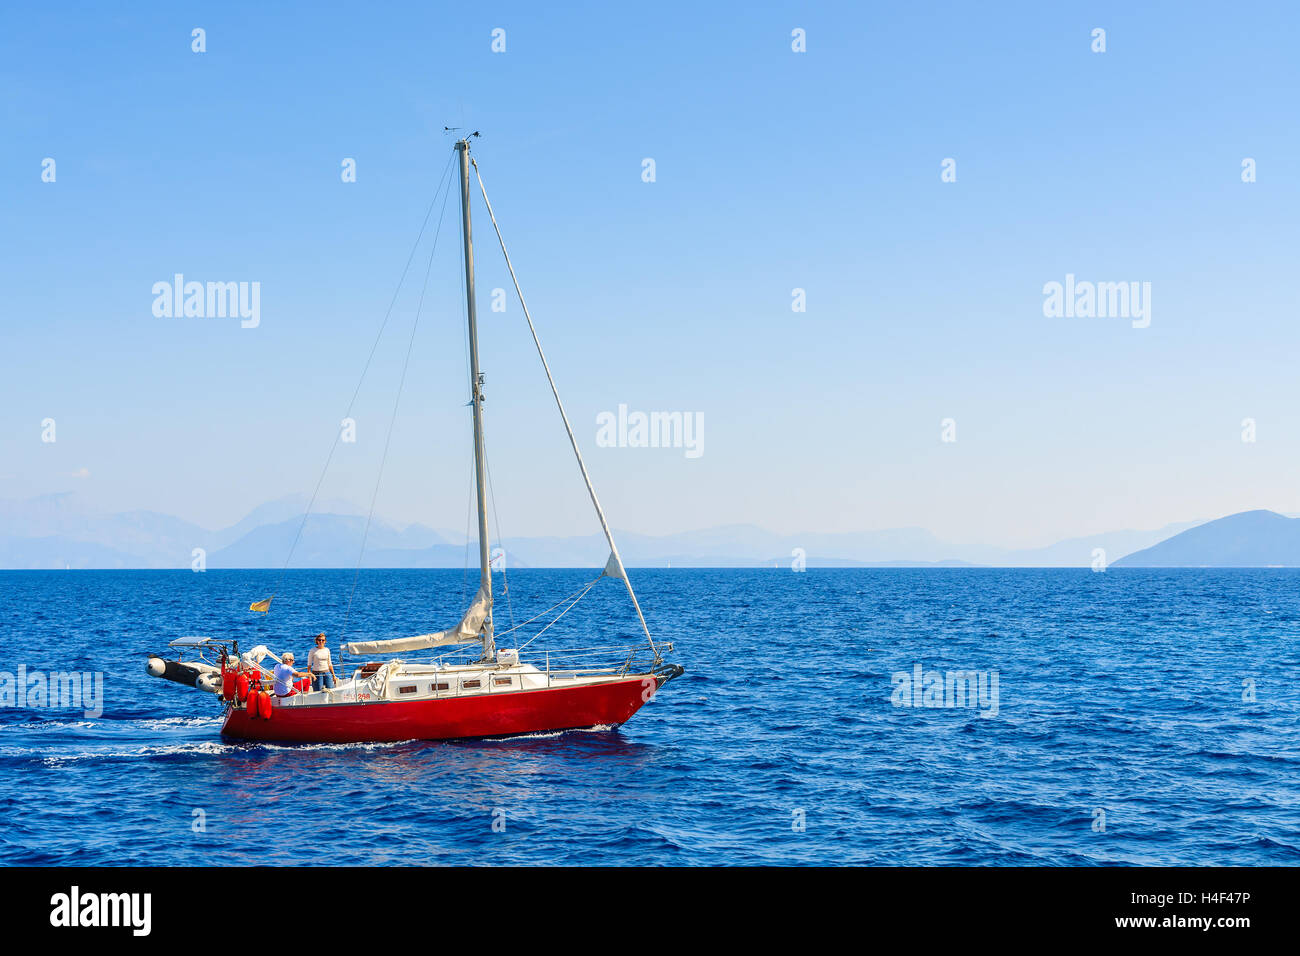 Mare Mediterraneo, GRECIA- Sep 19, 2014: rosso yacht in barca a vela sul mare blu vicino l'isola di Cefalonia. Le isole greche sono una popolare destinazione turistica in Europa. Foto Stock